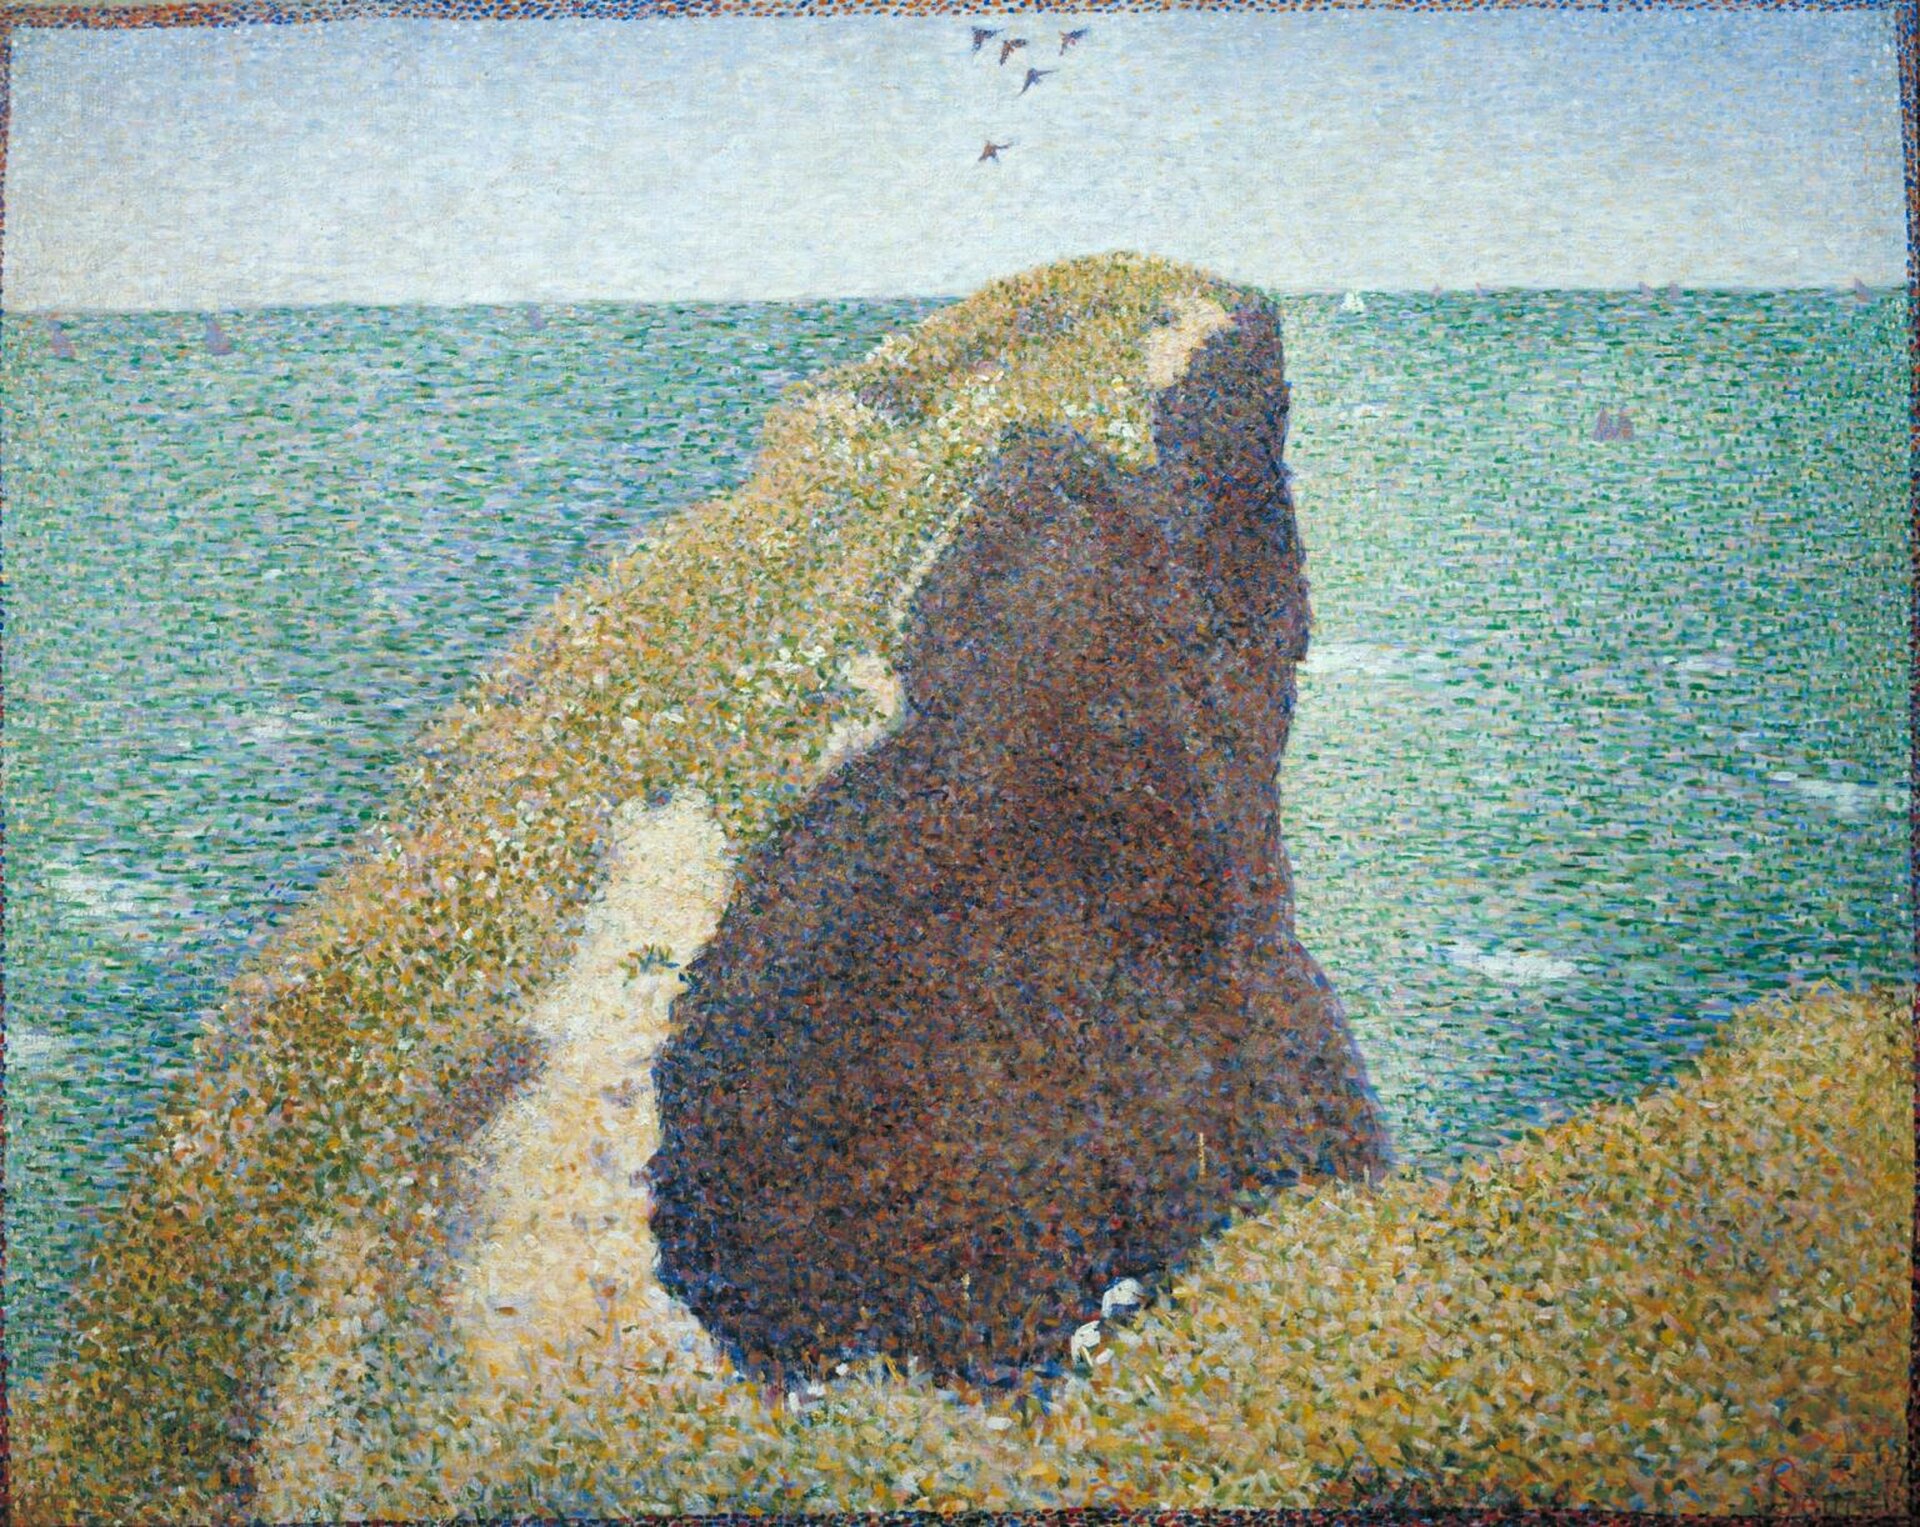 Ilustracja przedstawia obraz Georgesa Seurata pt. „Le Bec du Hoc, Grandcamp”. Ilustracja przedstawia obraz powstały z małych plamek farby, które odzwierciedliły efekt płaszczyzny. Widzimy skałę wznoszącą się przed morzem. Po niebie lata kilka ptaków.